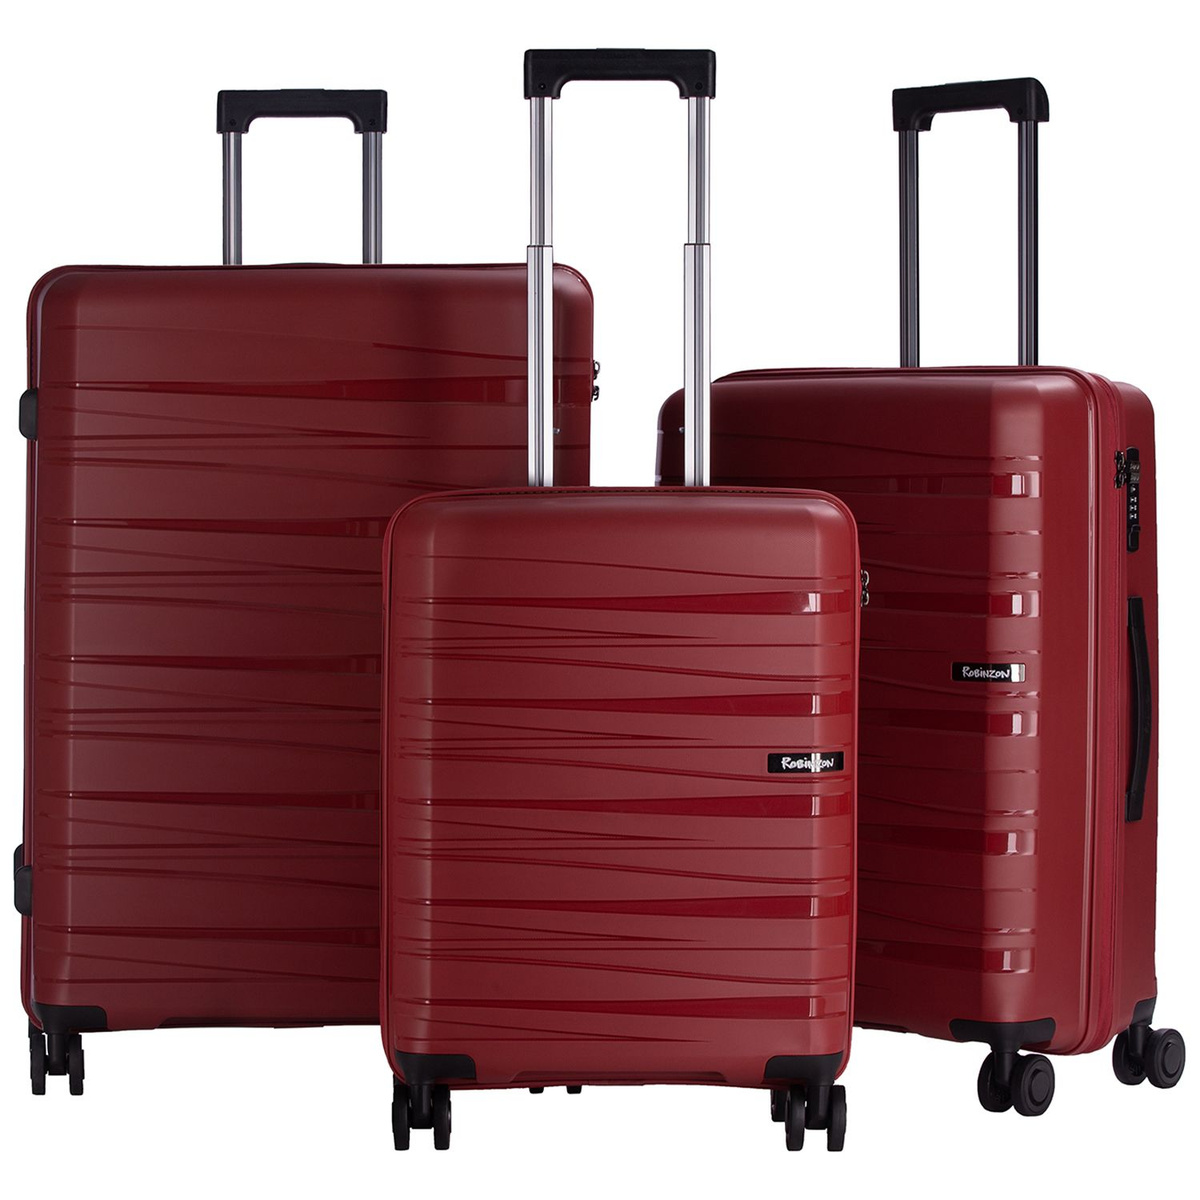 Размер чемодана большой L (70-100 см), что отлично подойдёт для длительных или семейных поездок.